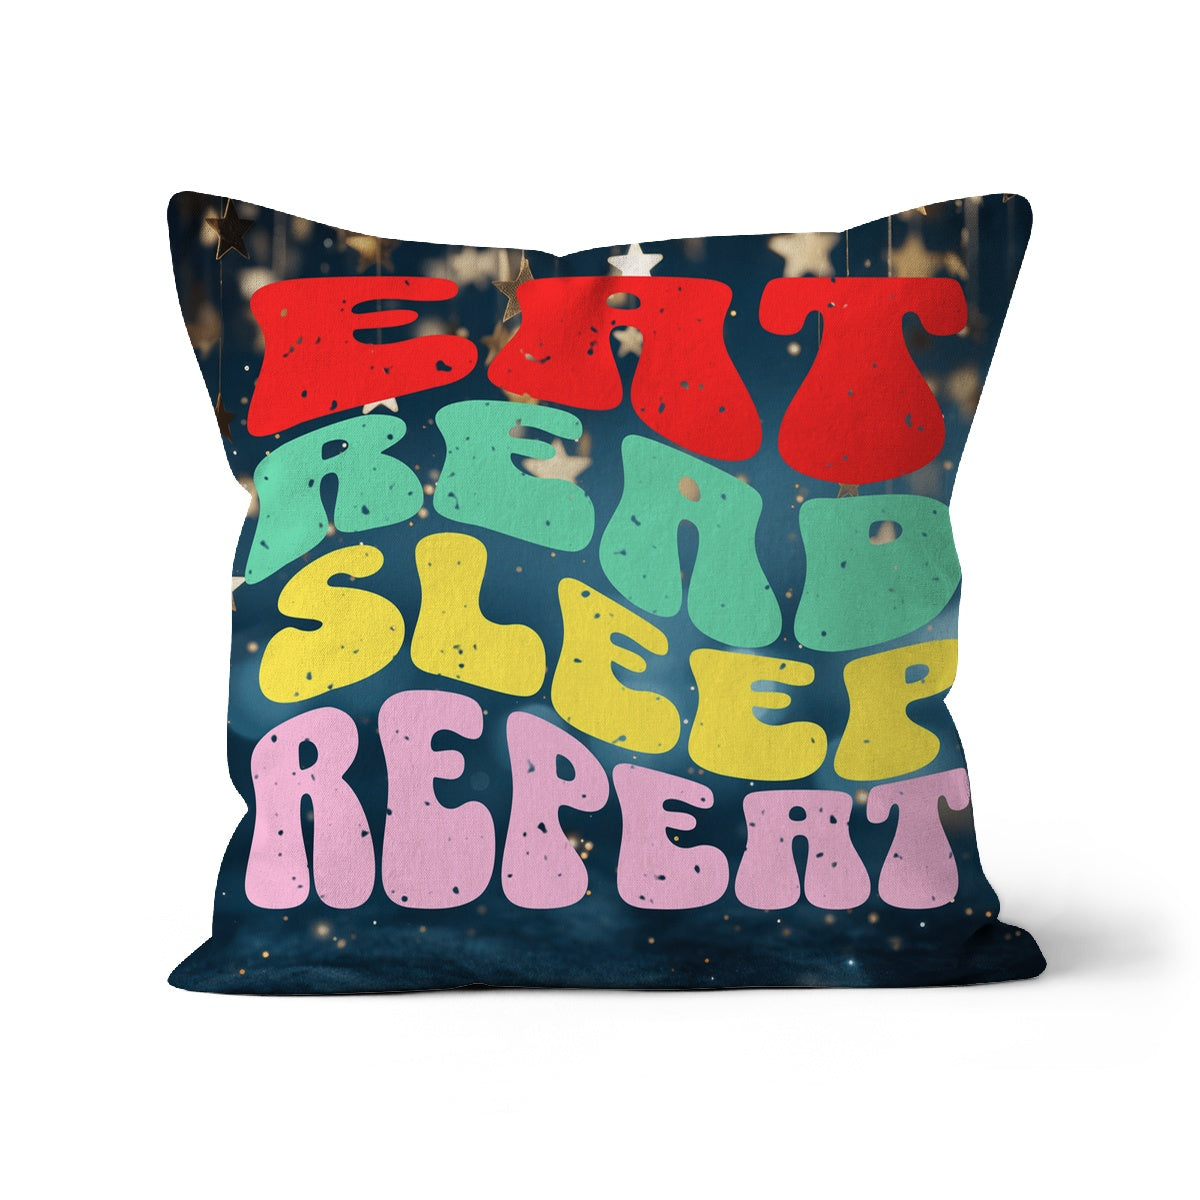 Eat Read Sleep Repeat Cushion